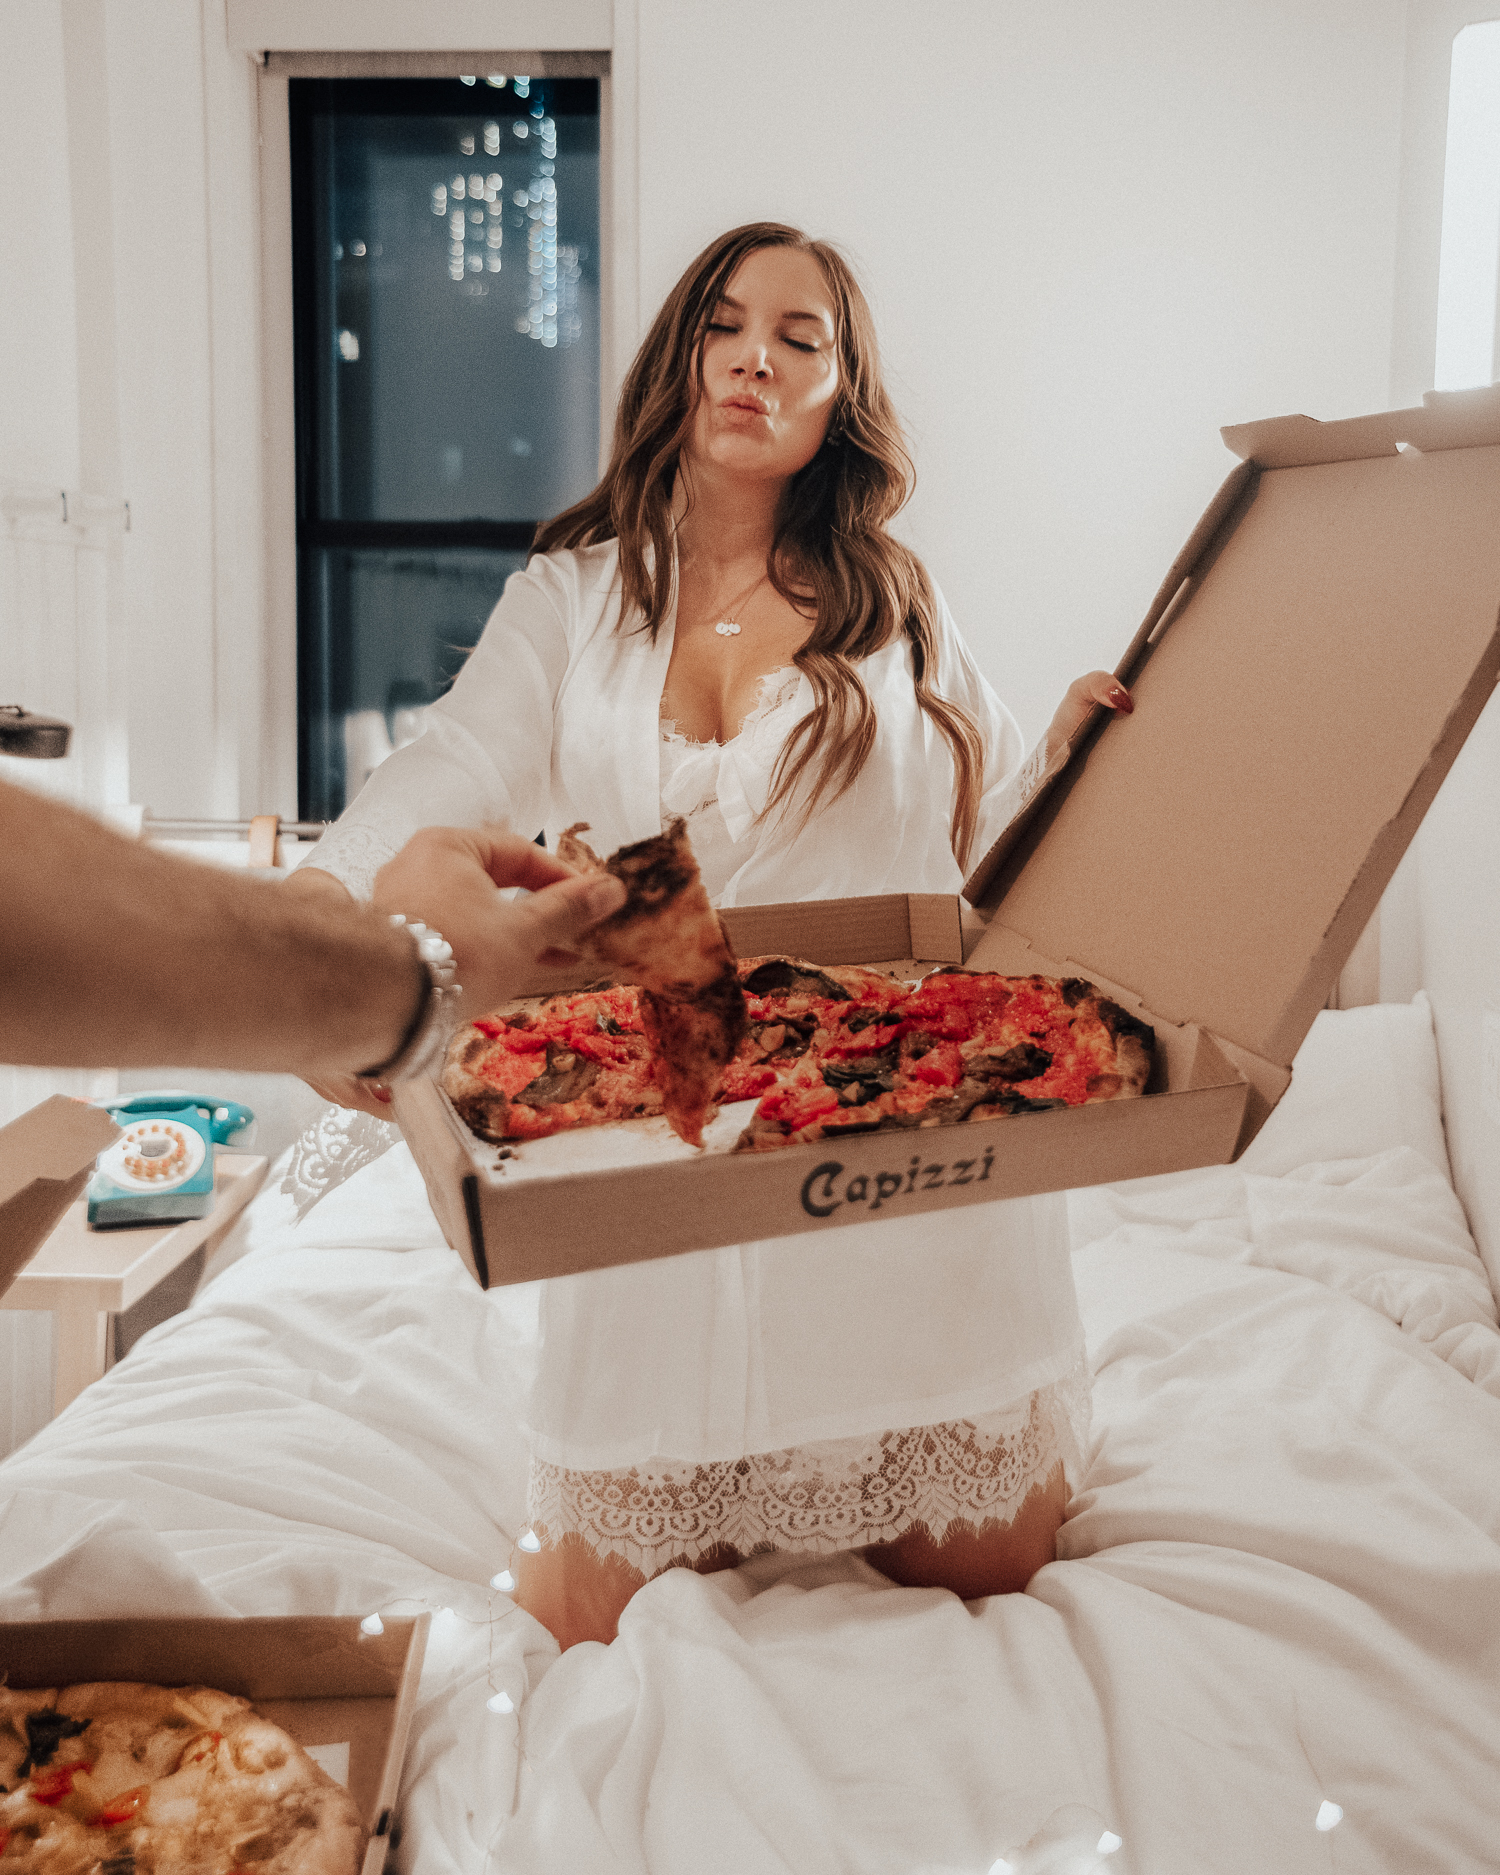 Vegan Pizza in Bed